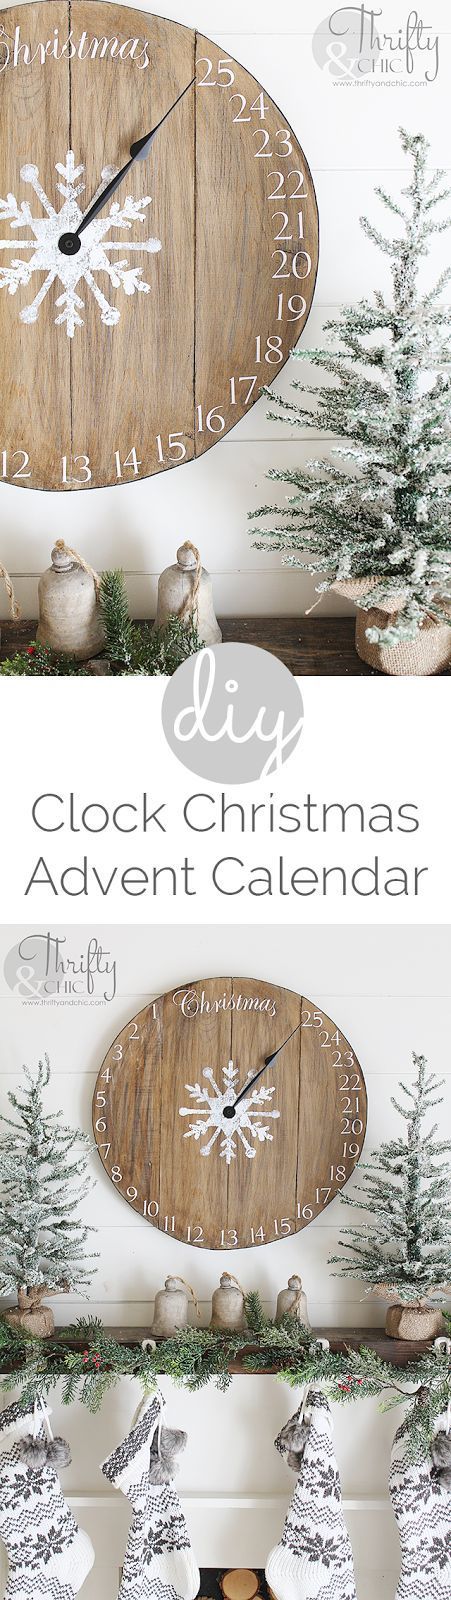 DIY wood clock Christmas advent calendar! Great rustic farmhouse Christmas decor!